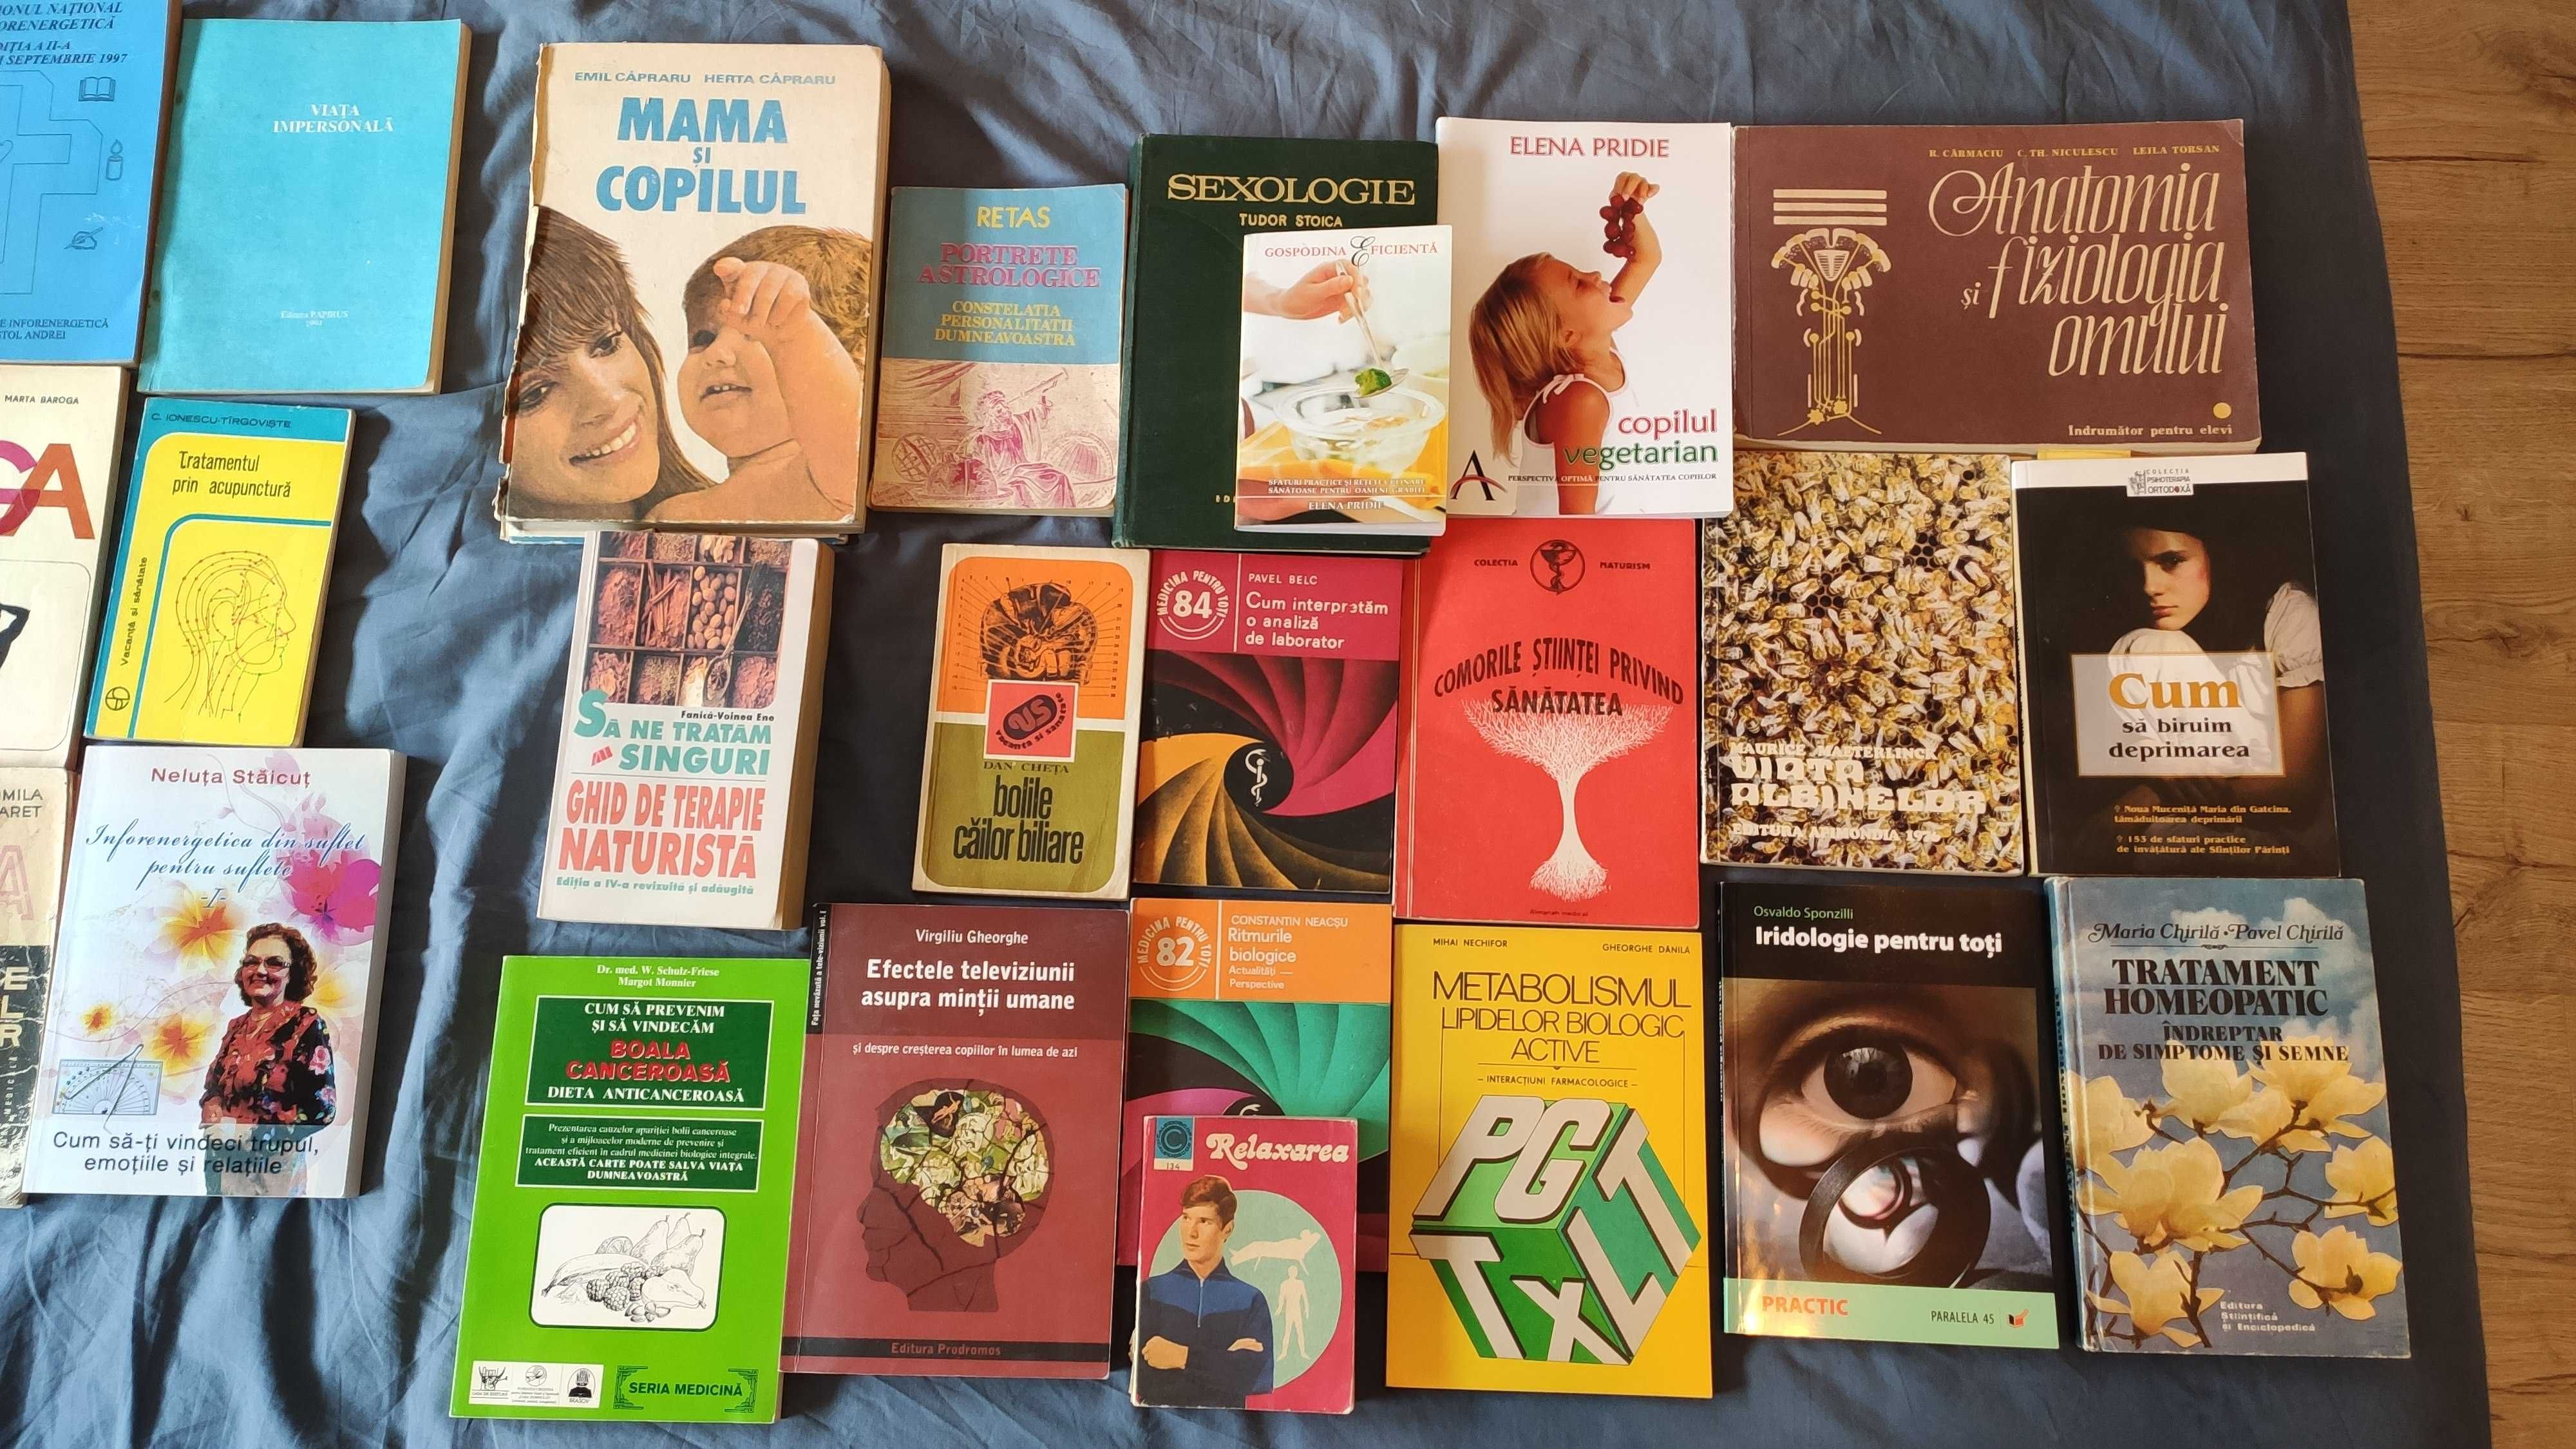 Cărți sănătate, sexologie, biologie, acupunctură, nutriție, terapie...